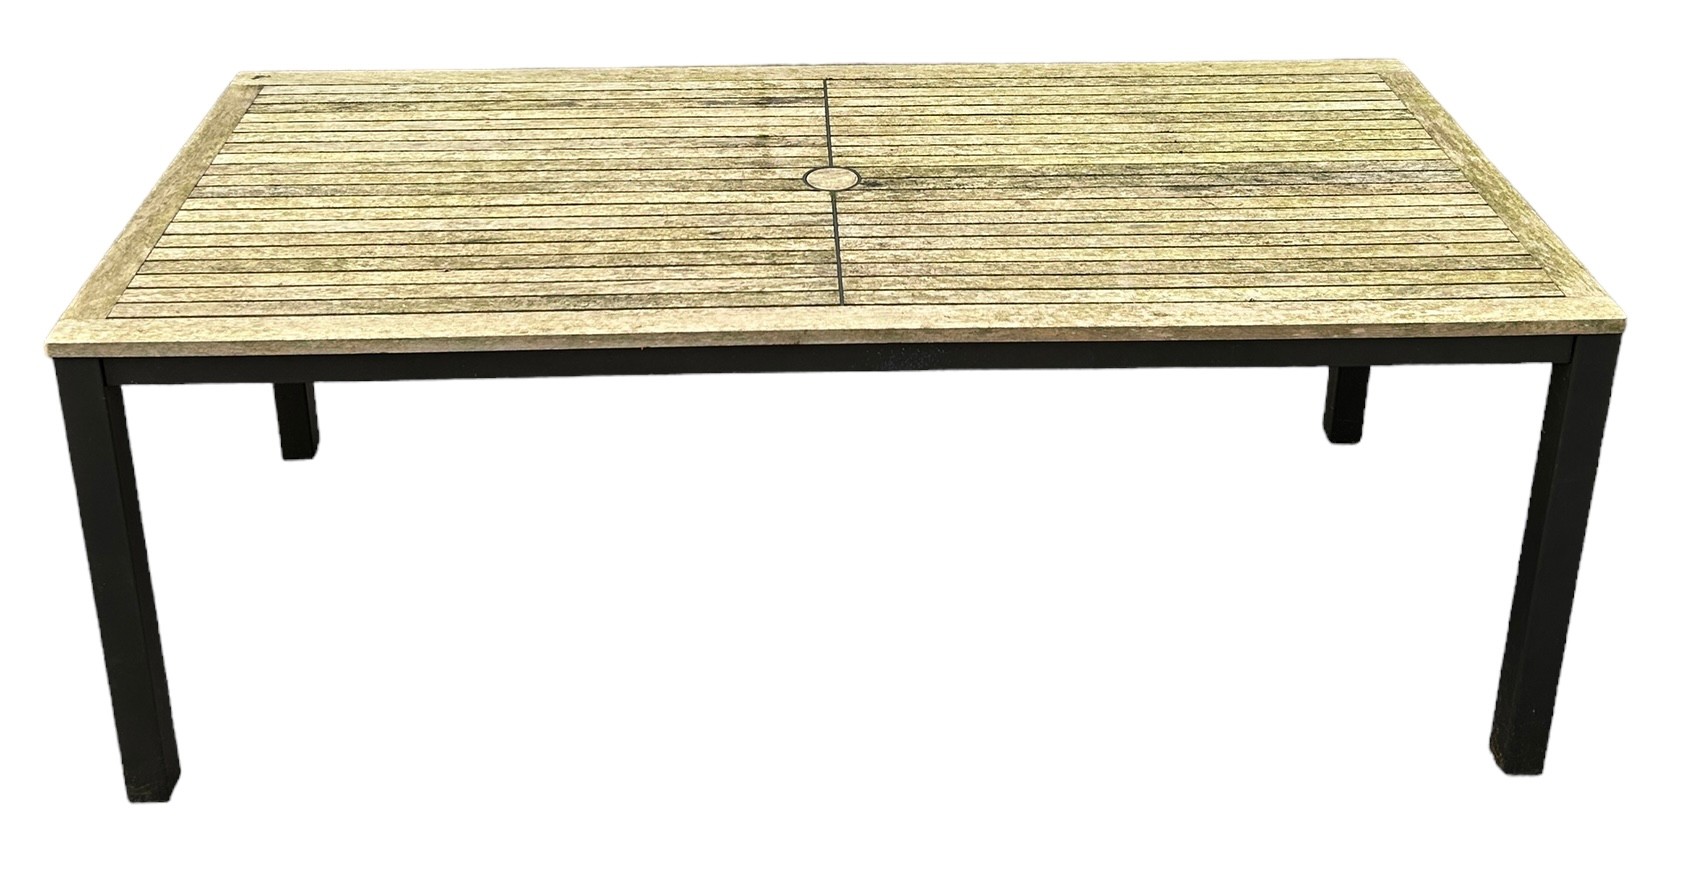 A TEAK AND ALUMINIUM GARDEN TABLE BY BARLOW TYRIE, 200cm x 90cm x 75cm